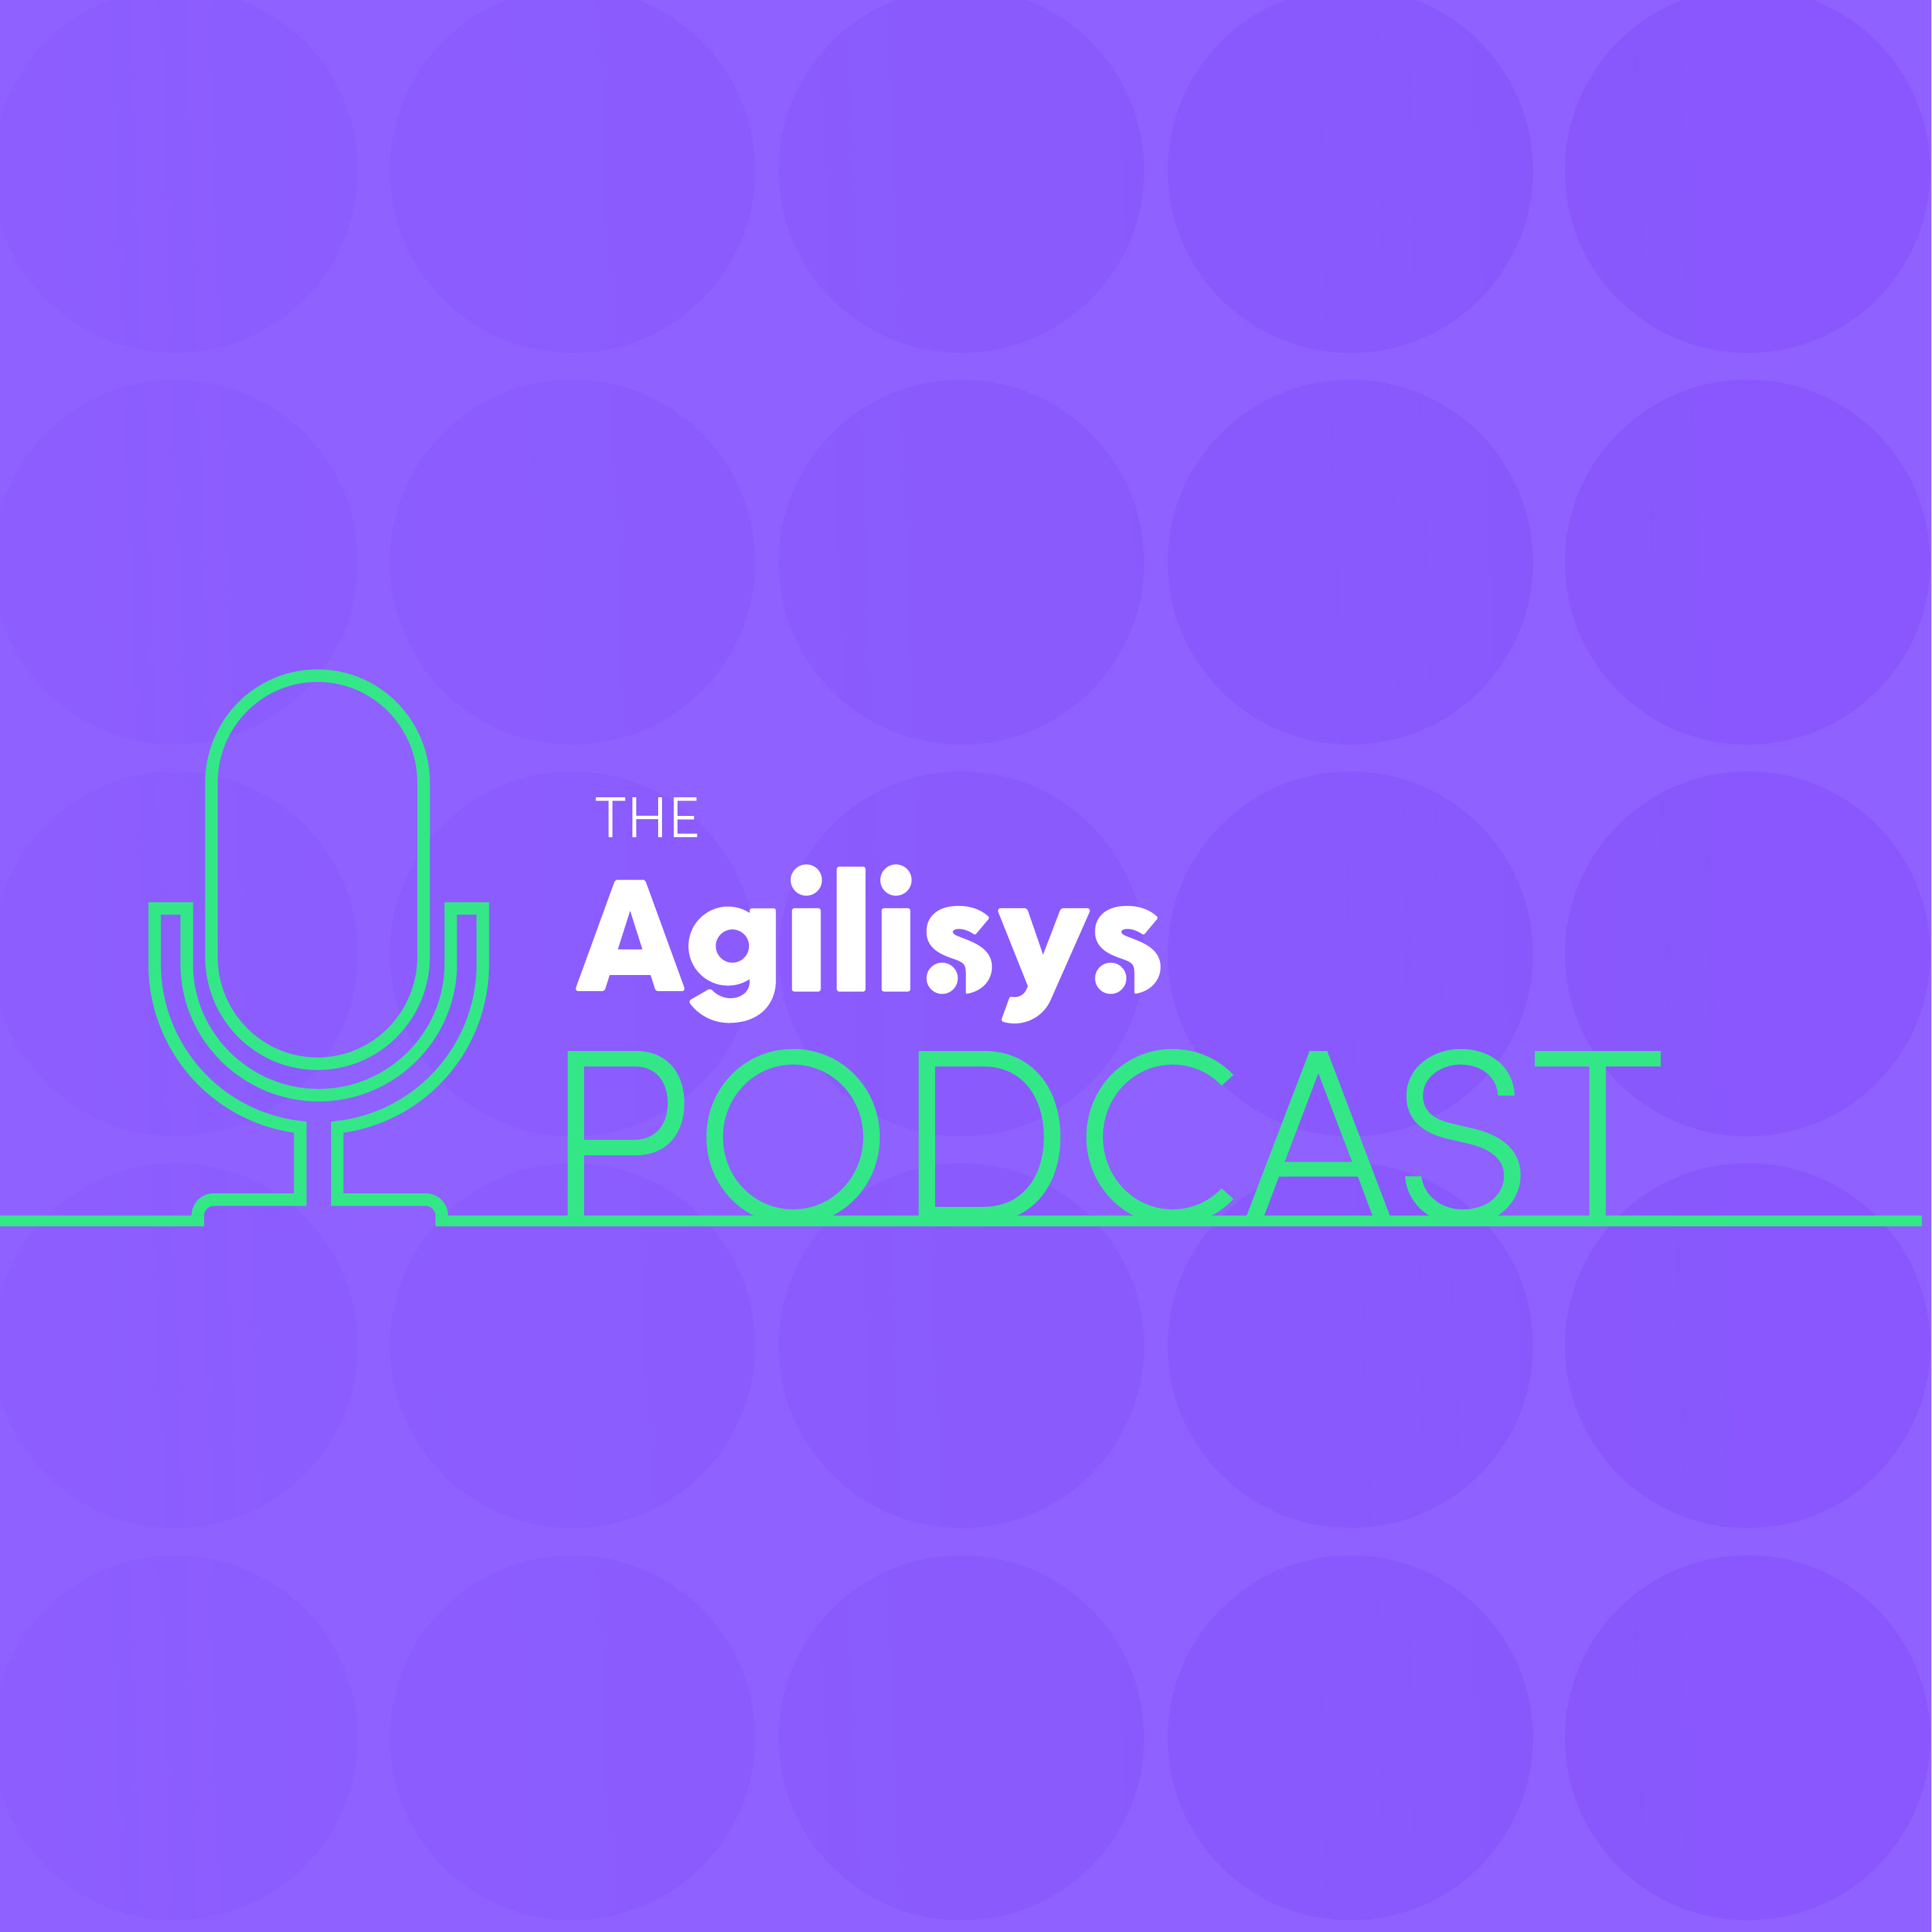 The Agilisys Podcast